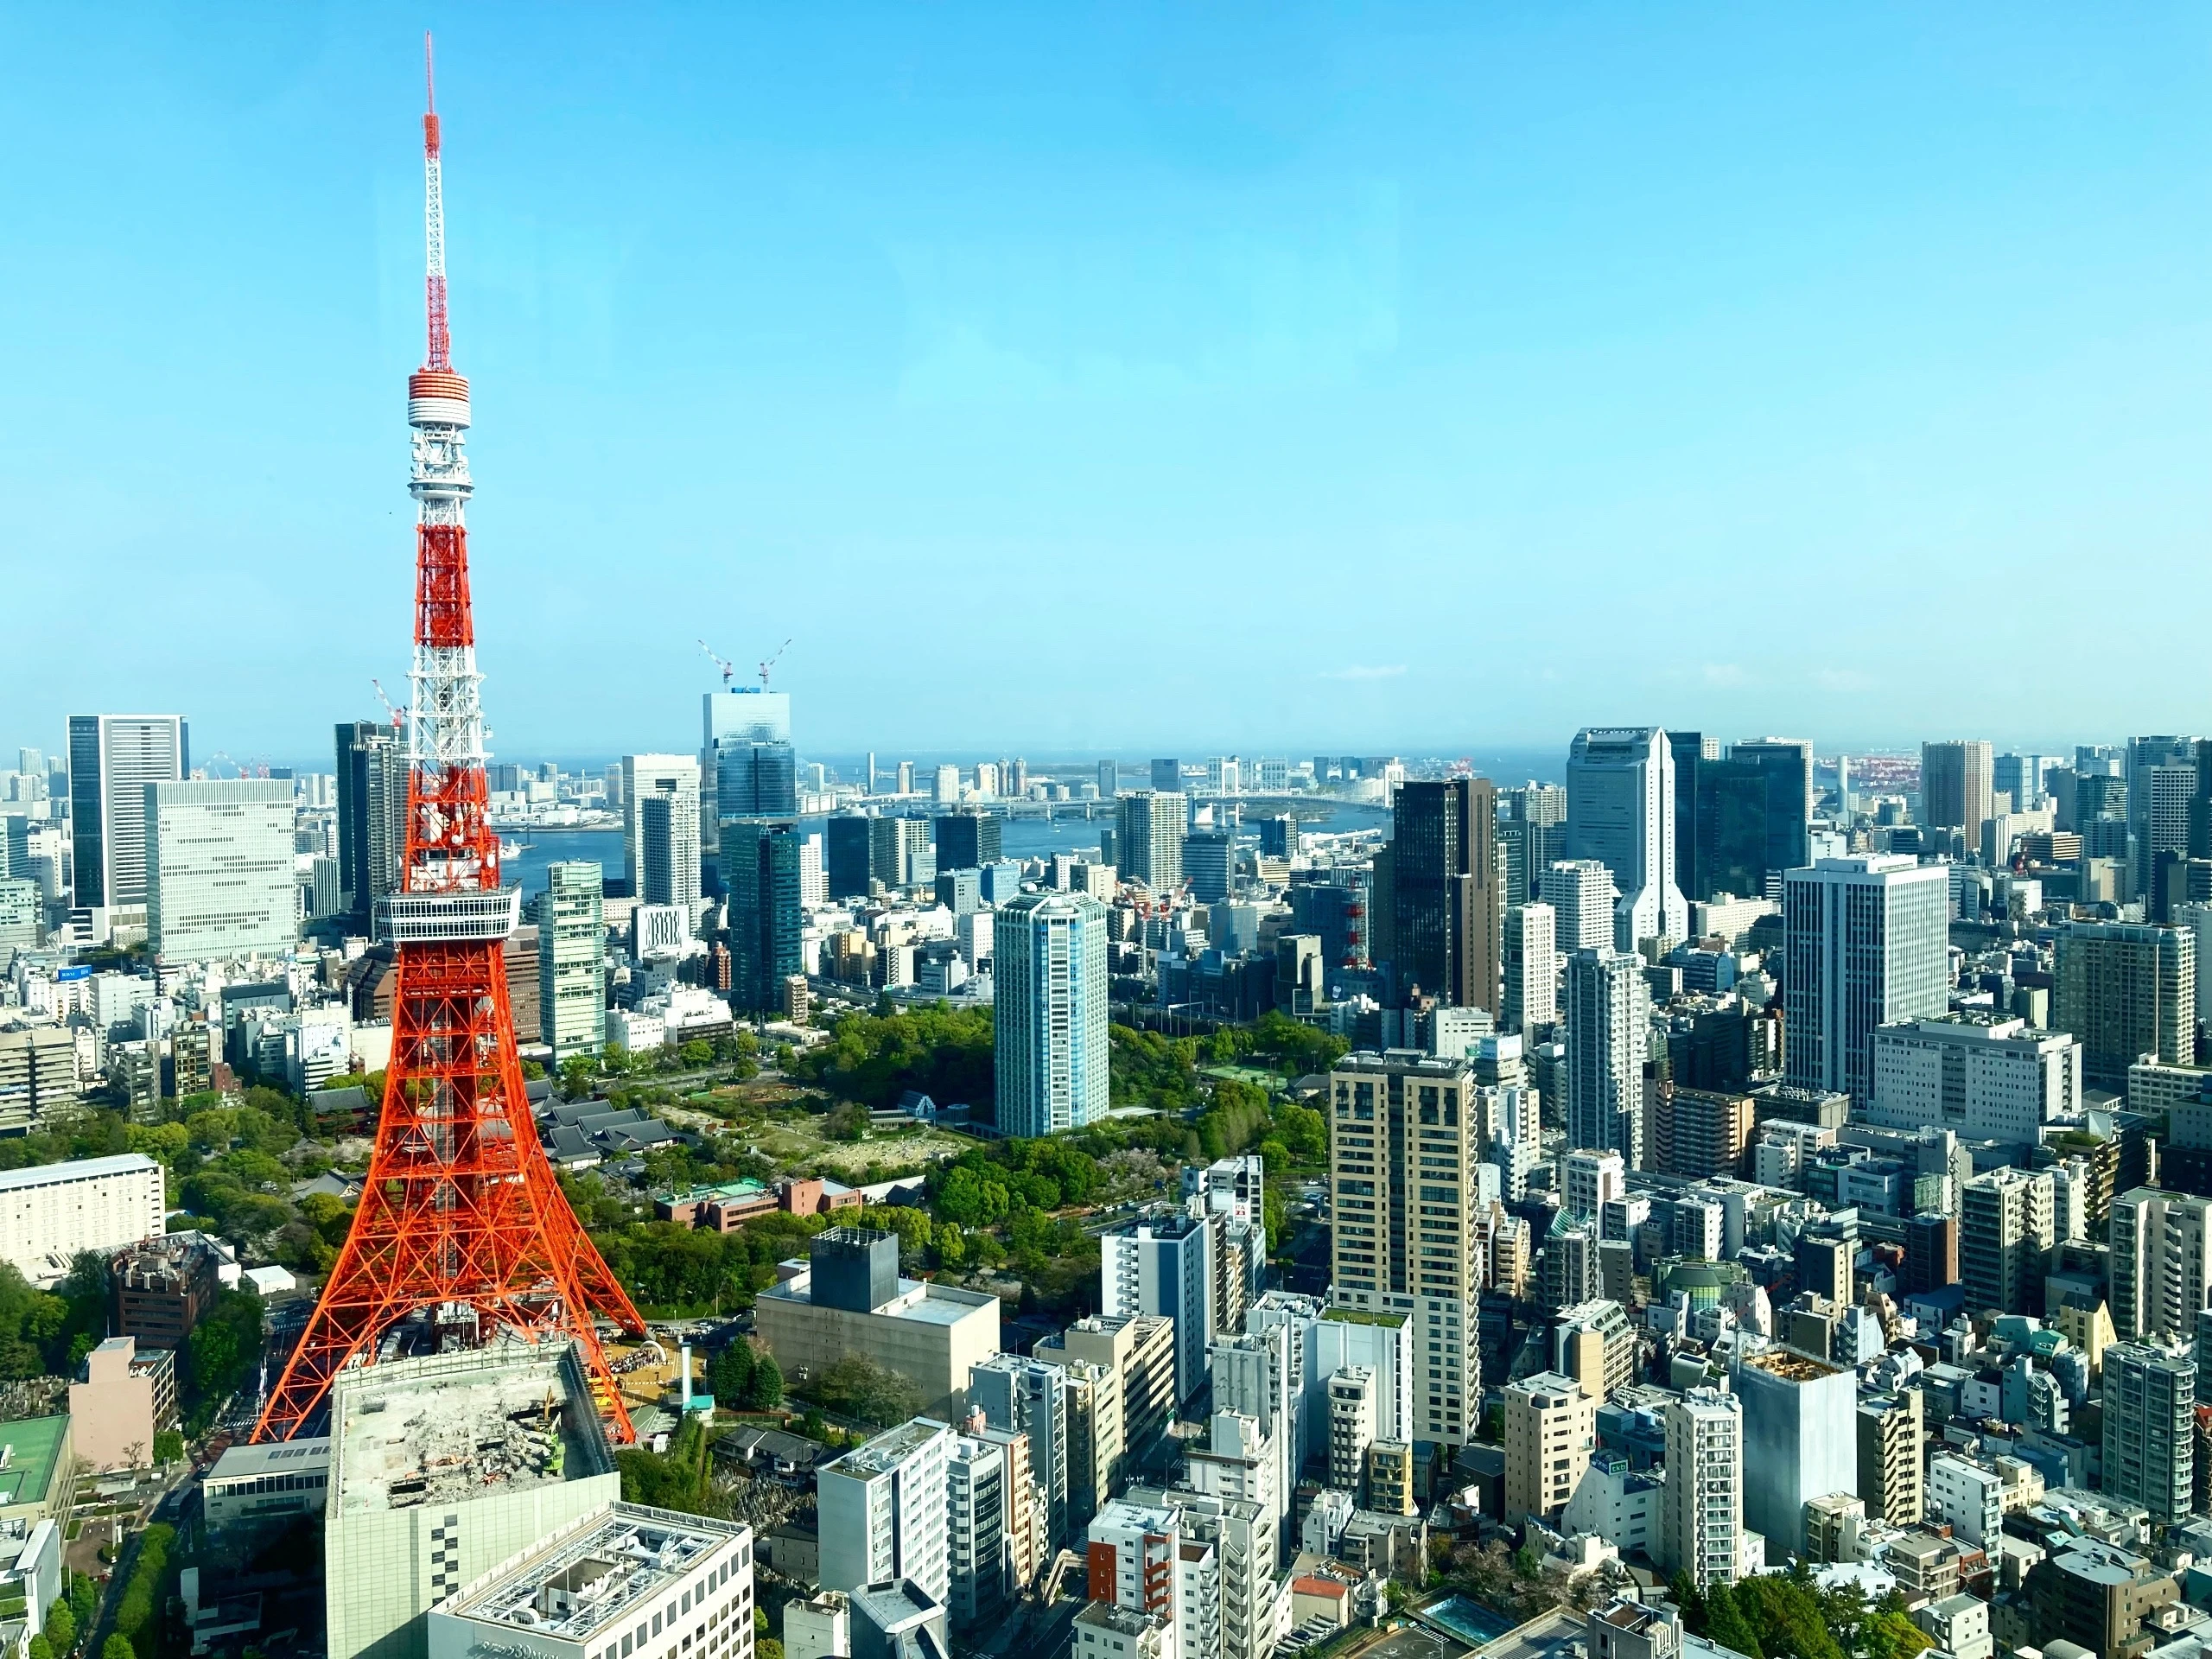 東京タワーと周辺のビル群。